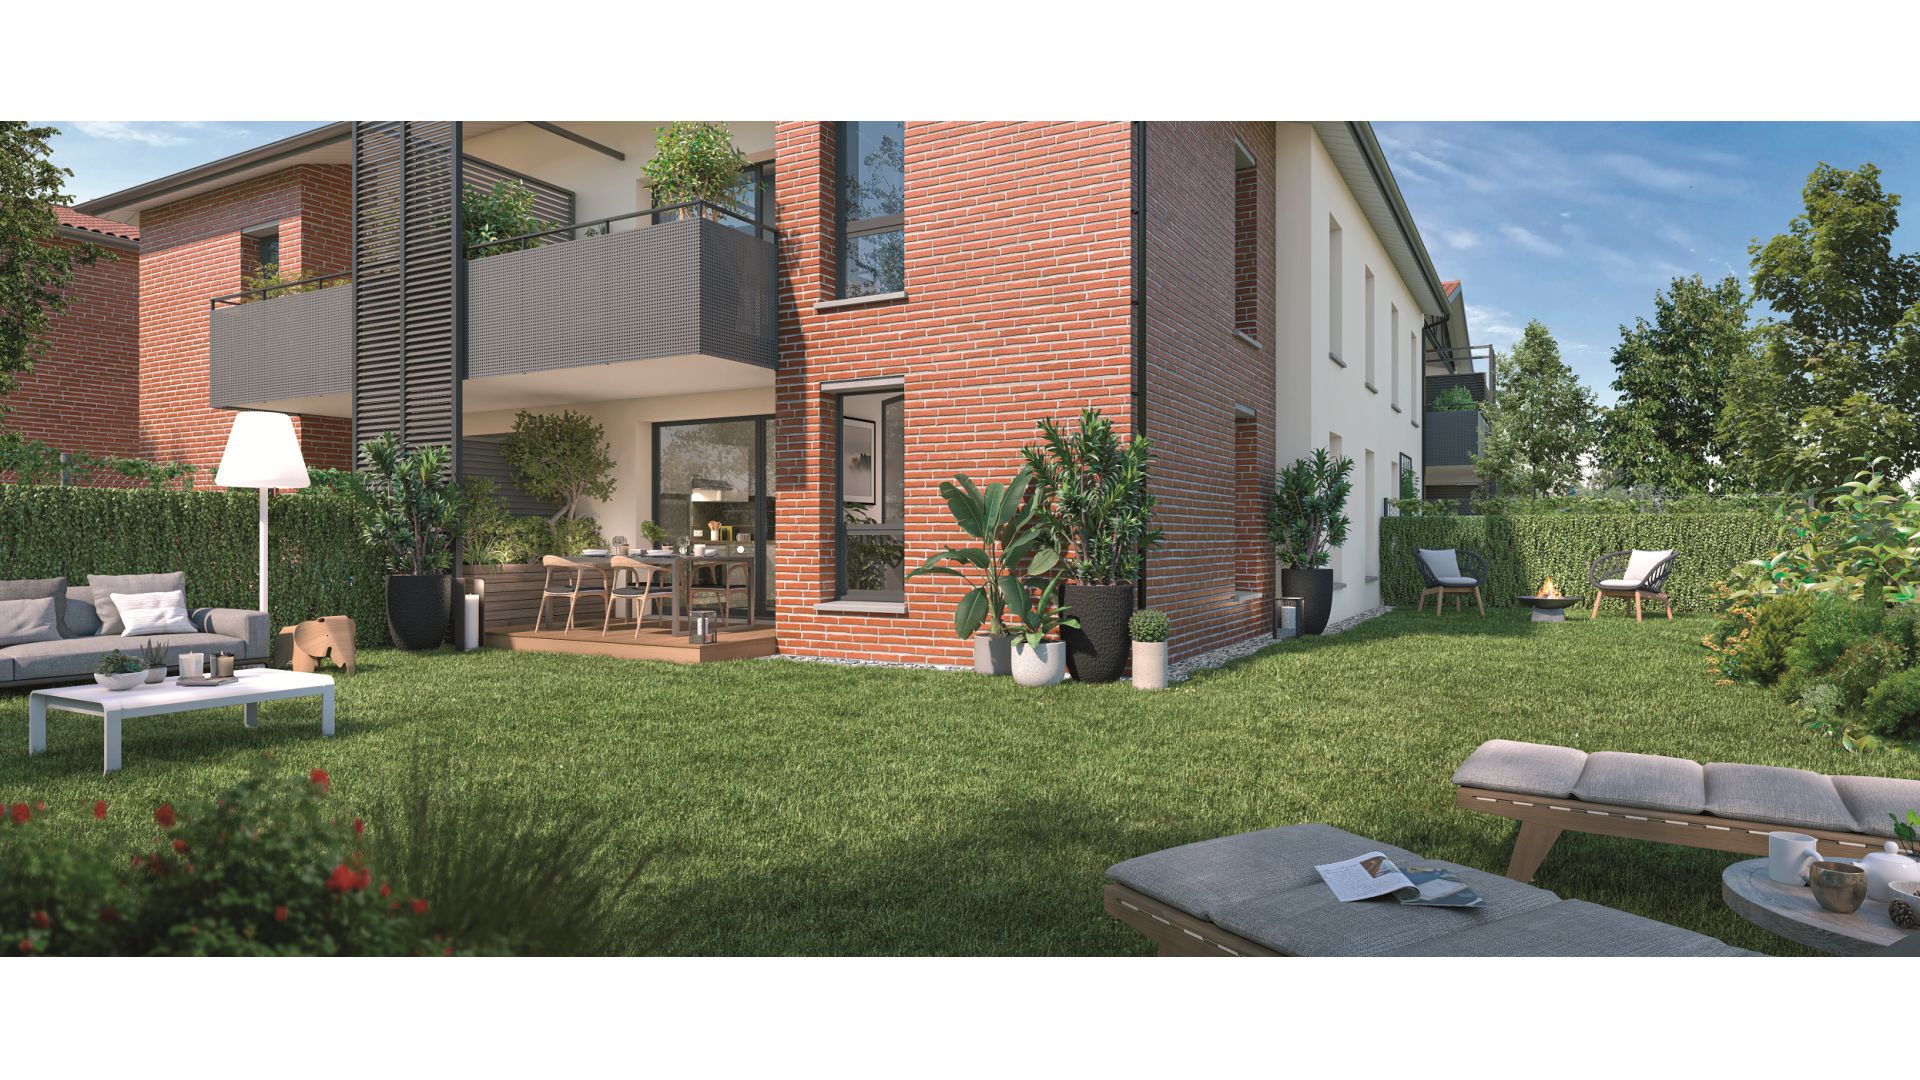 Greencity immobilier - achat appartements neufs du T2 au T3 - Résidence Van Gogh - 31150 Gagnac-sur-Garonne - vue terrasse jardin